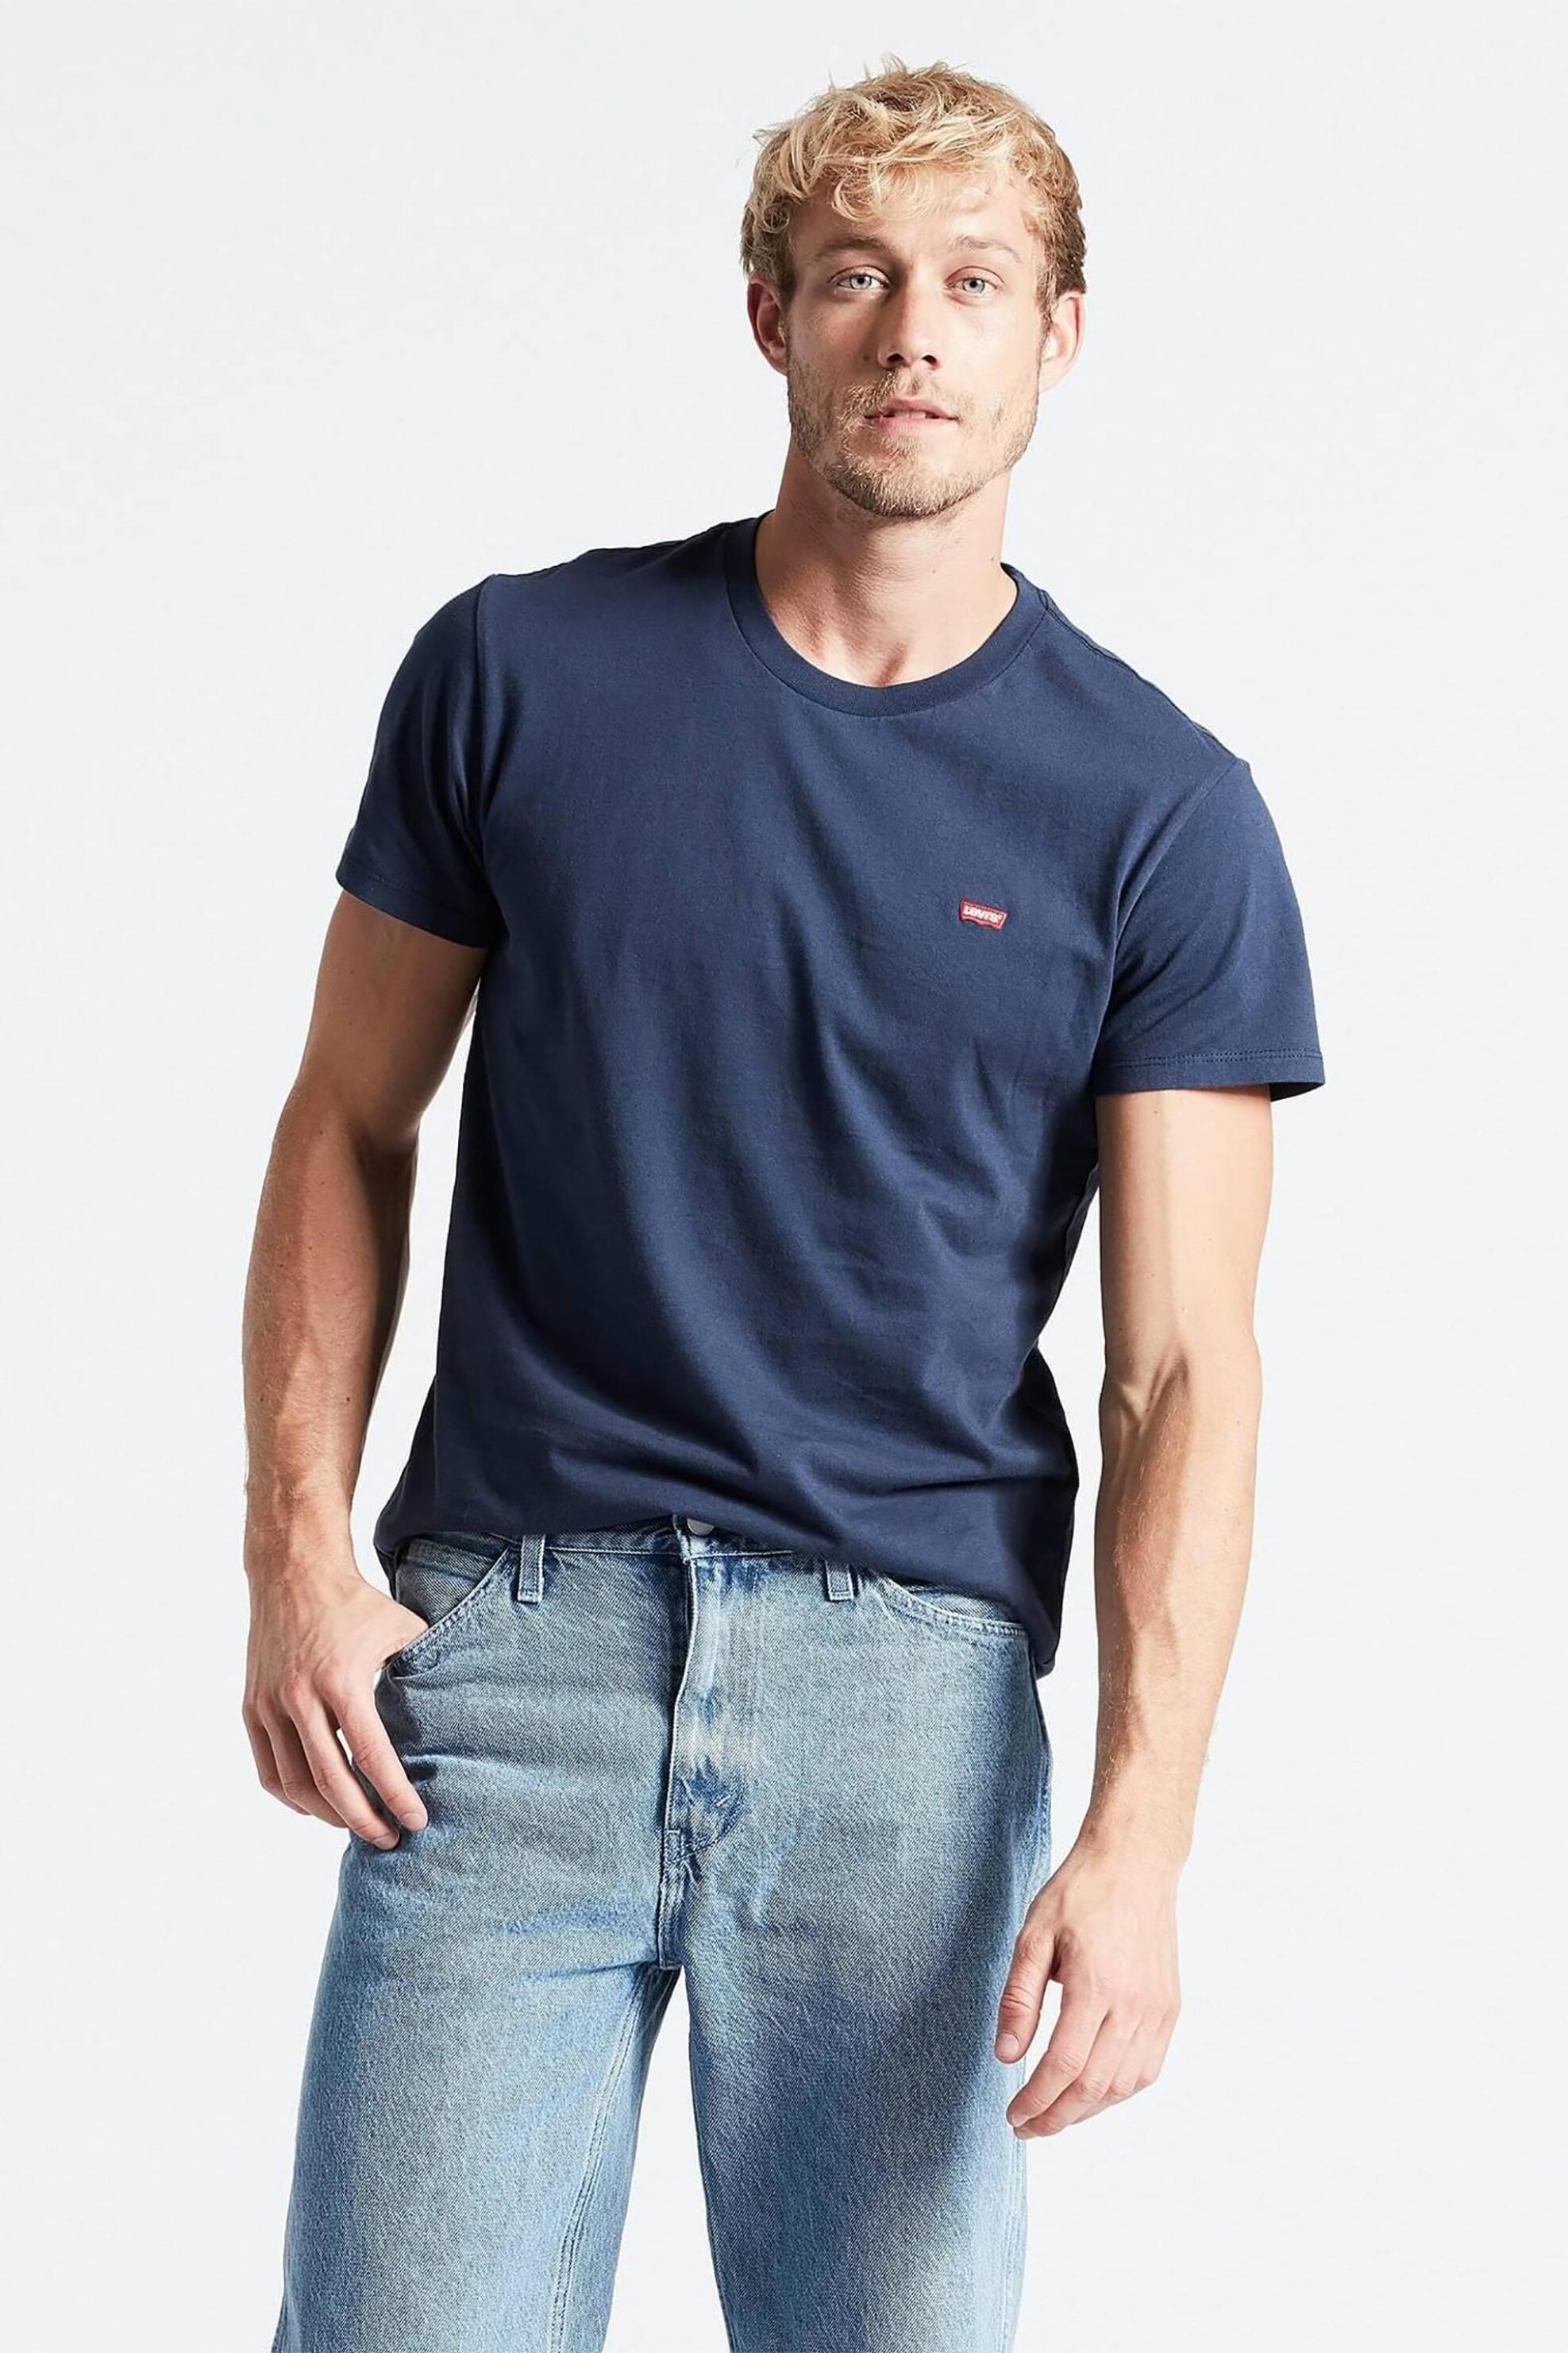 Ανδρική Μόδα > Ανδρικά Ρούχα > Ανδρικές Μπλούζες > Ανδρικά T-Shirts Levi's® ανδρικό T-shirt μονόχρωμο με λογότυπο Regular Fit "Original Housemark" - 566050017 Μπλε